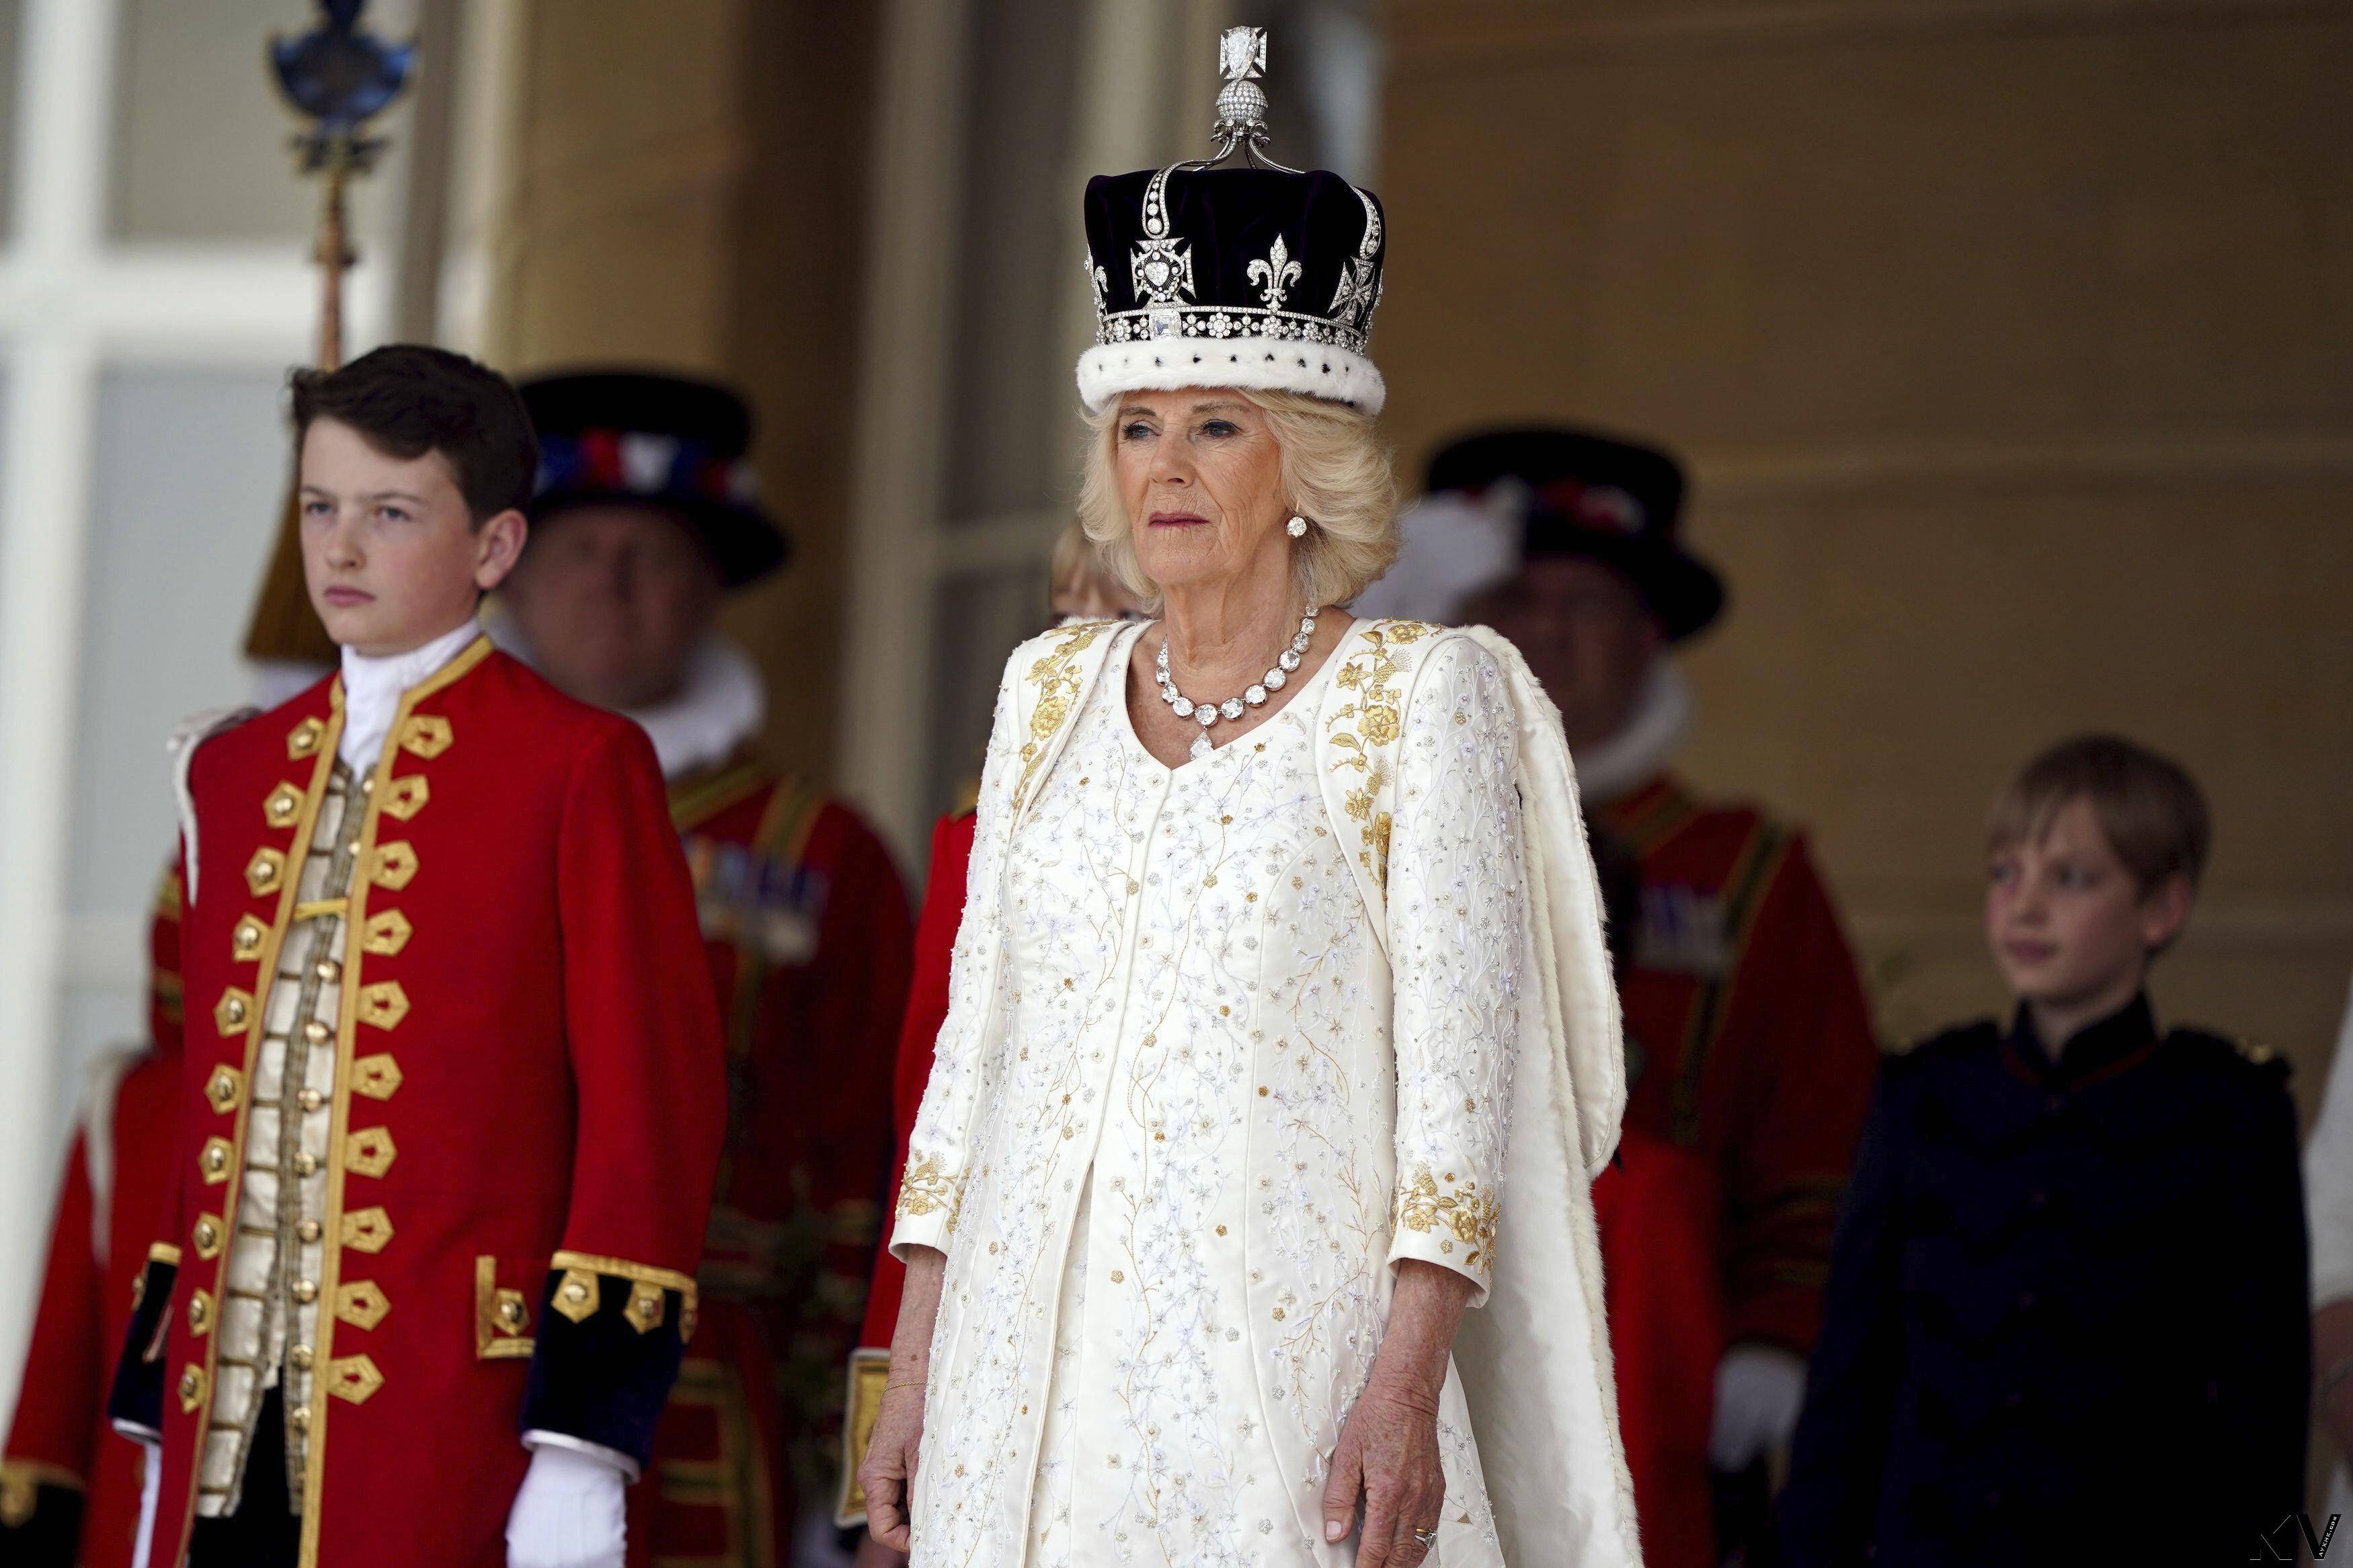 英国王加冕王冠一生只戴一次　礼成换戴闪耀317.4克拉巨钻冠冕 时尚穿搭 图5张